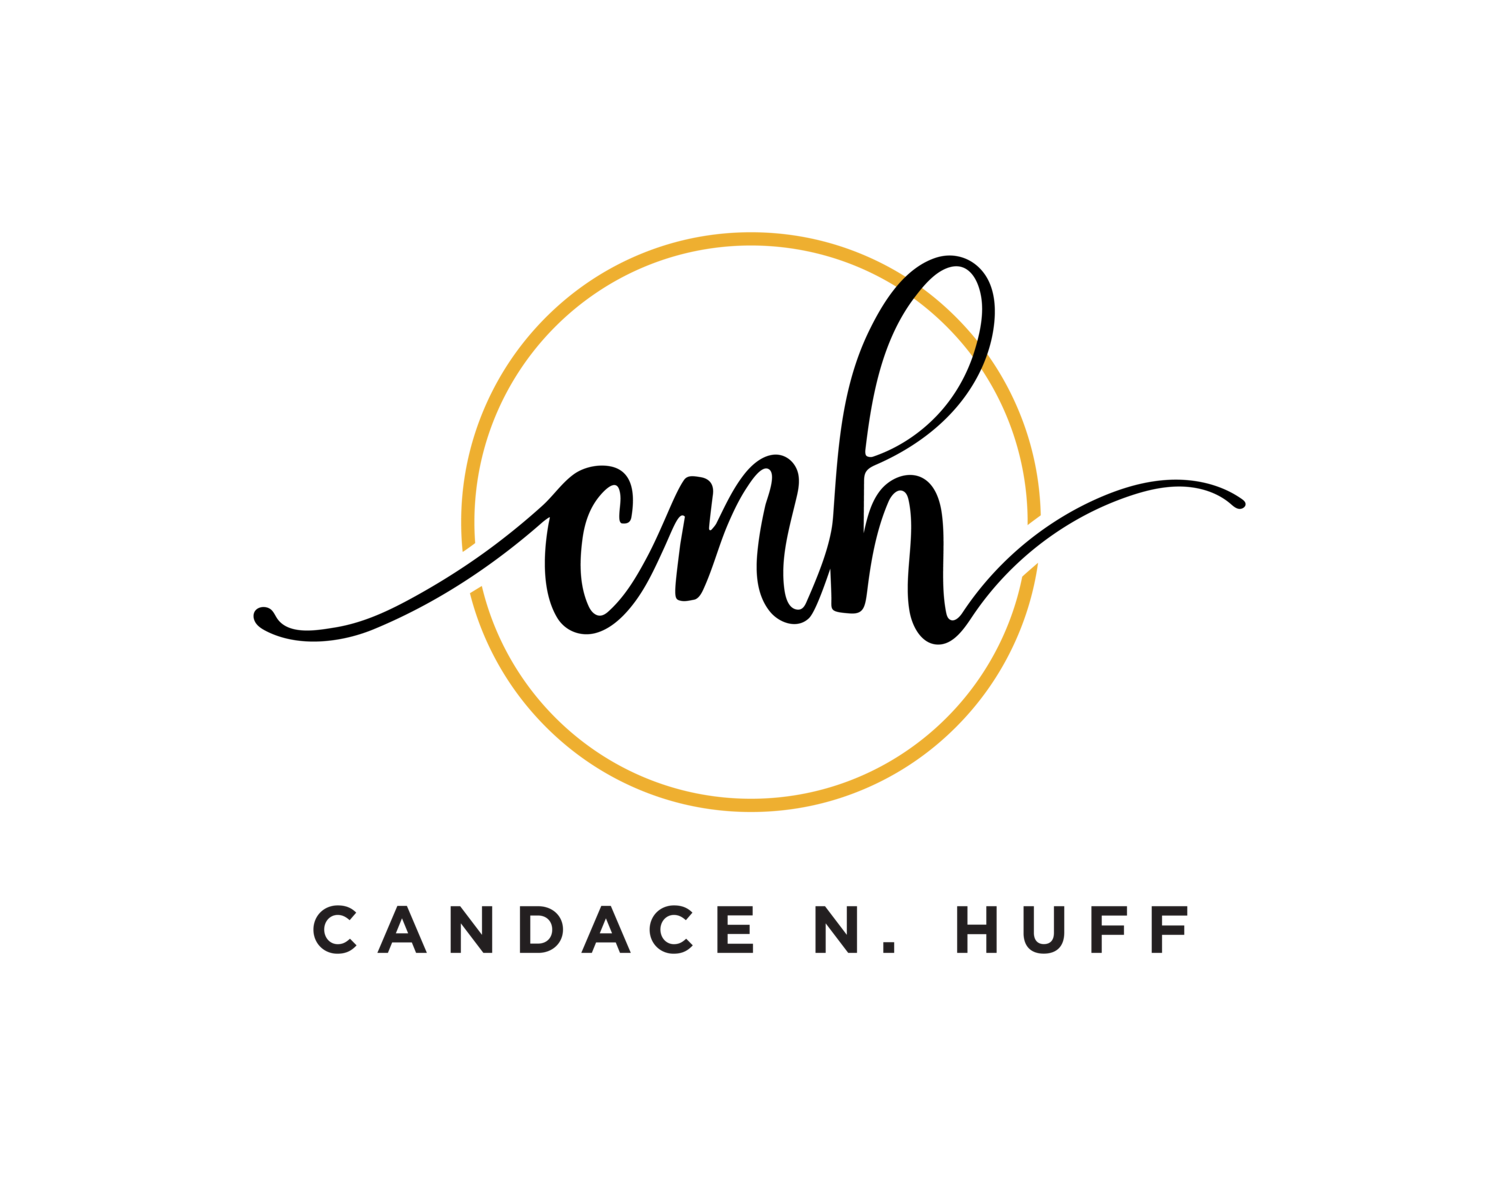 Candace N. Huff